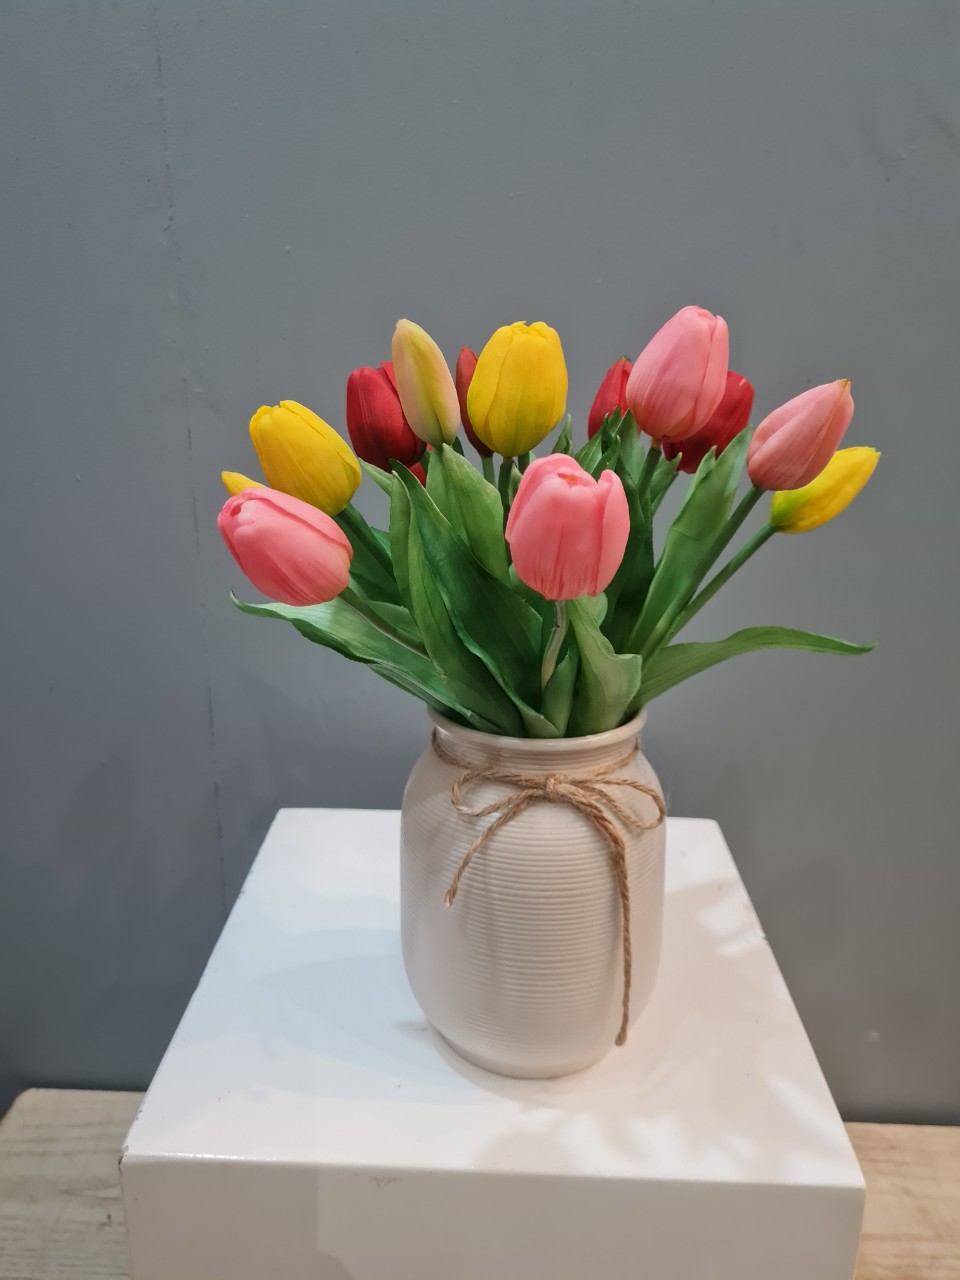 bình gốm hoa tulip vải lụa nhiều màu quà tặng 20-11 